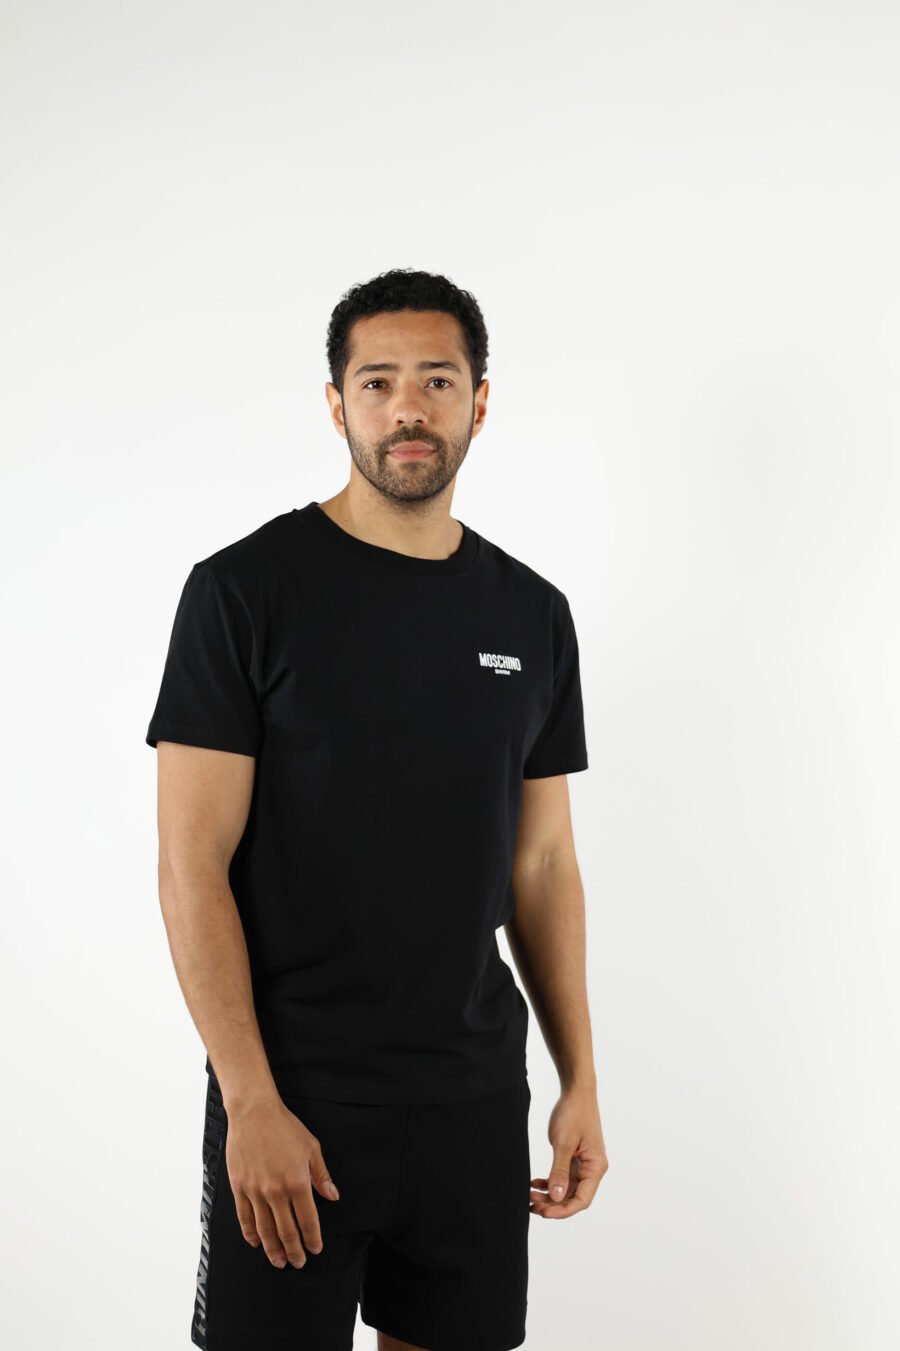 Schwarzes T-Shirt mit Minilogue "swim" - 111054